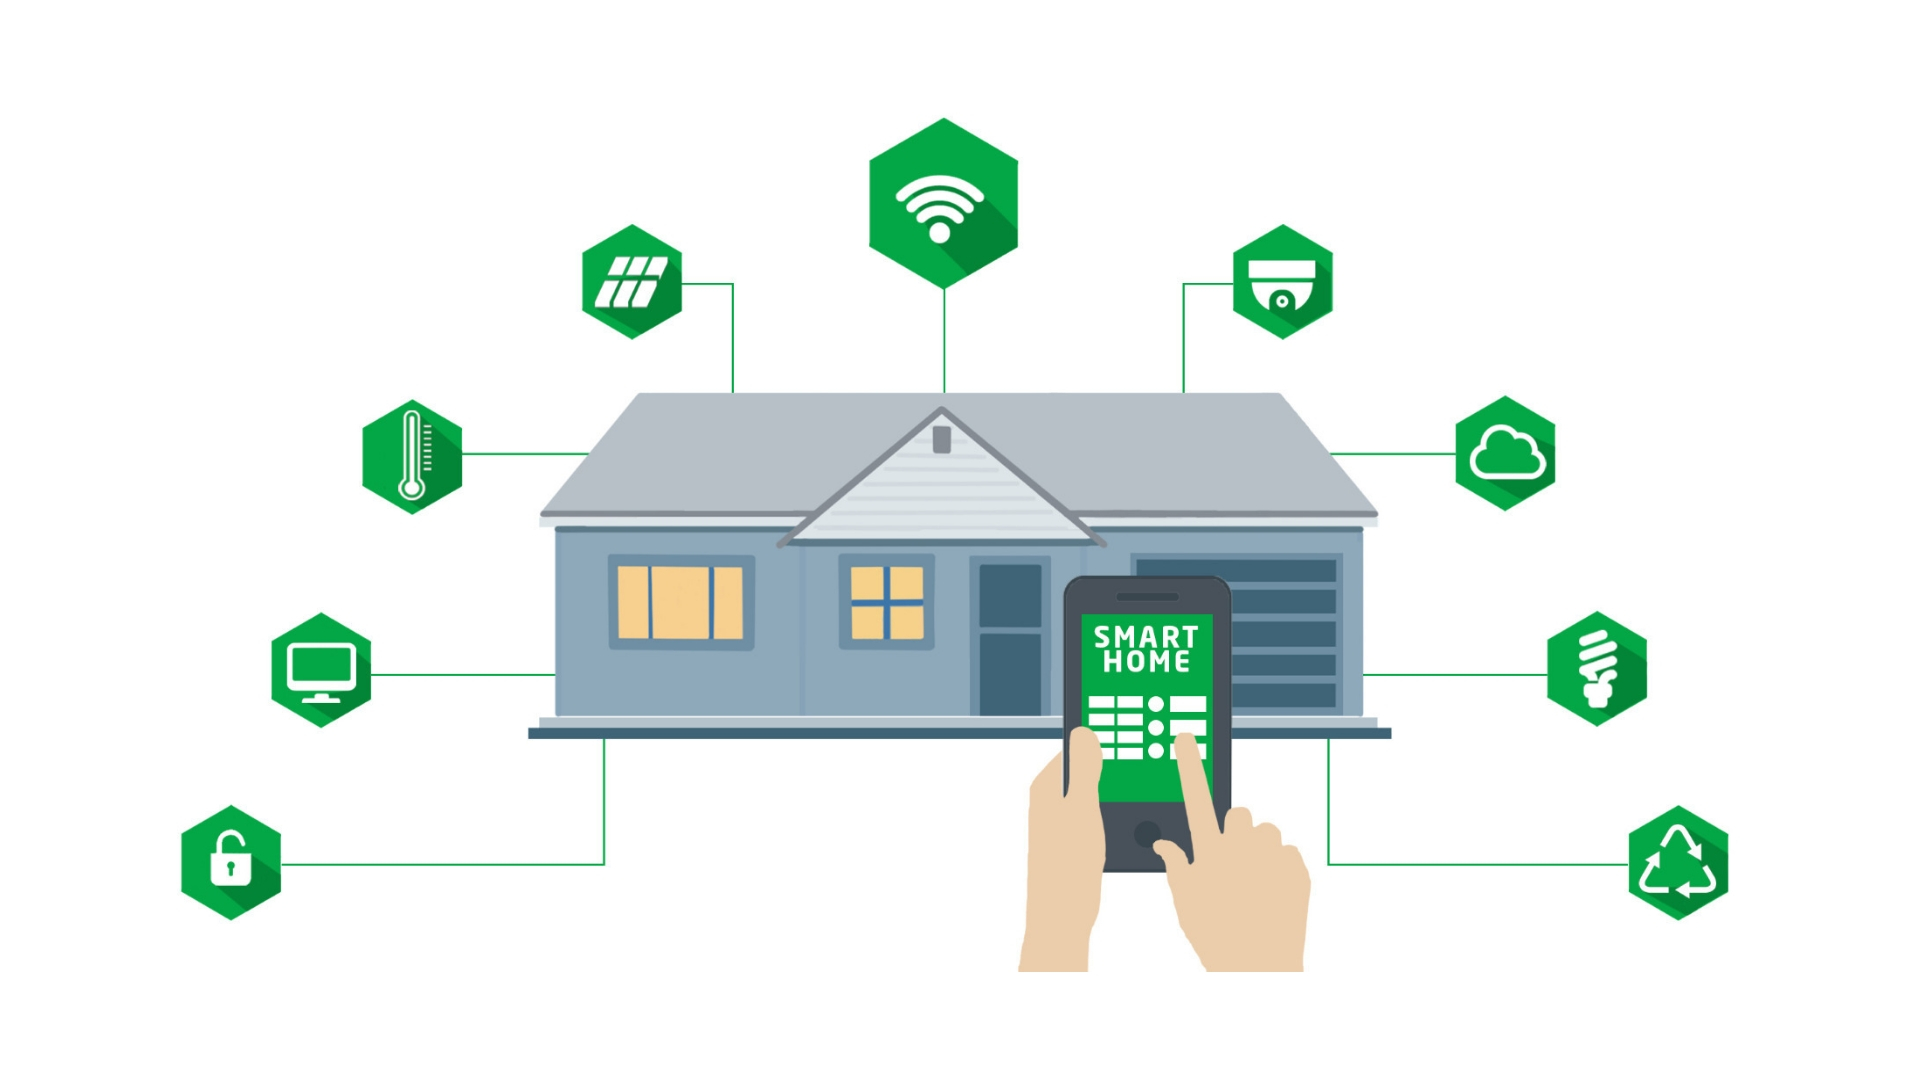 Domótica y Smart Home: nuevas propuestas para tu hogar inteligente